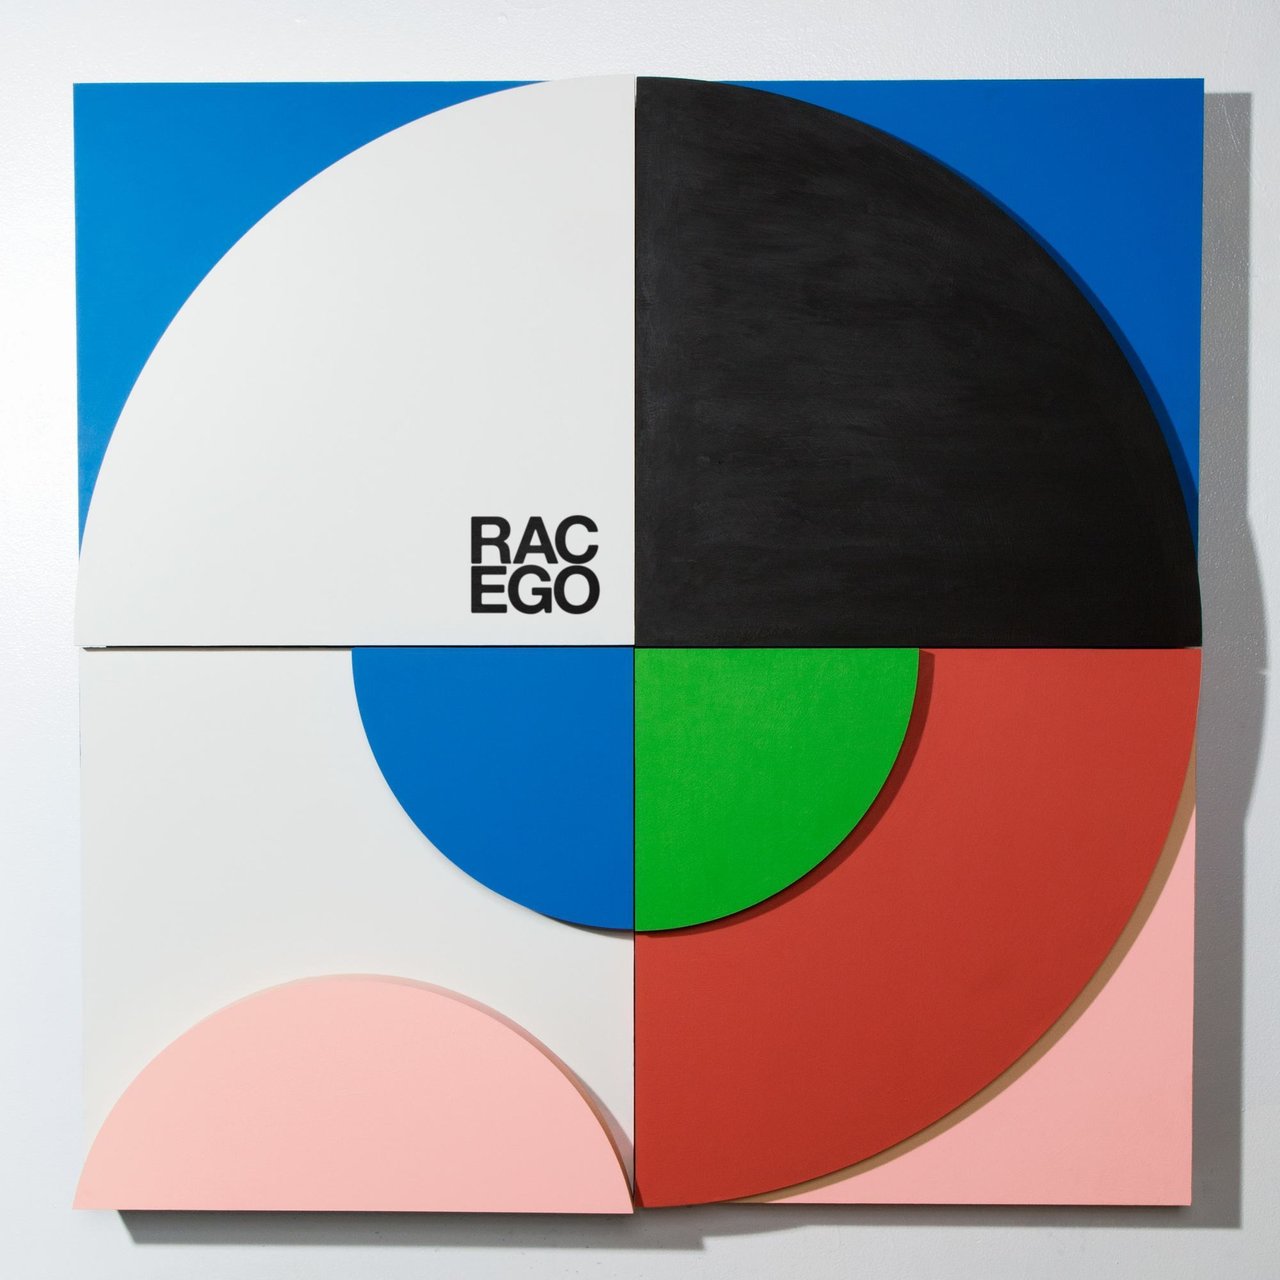 RAC EGO cover artwork